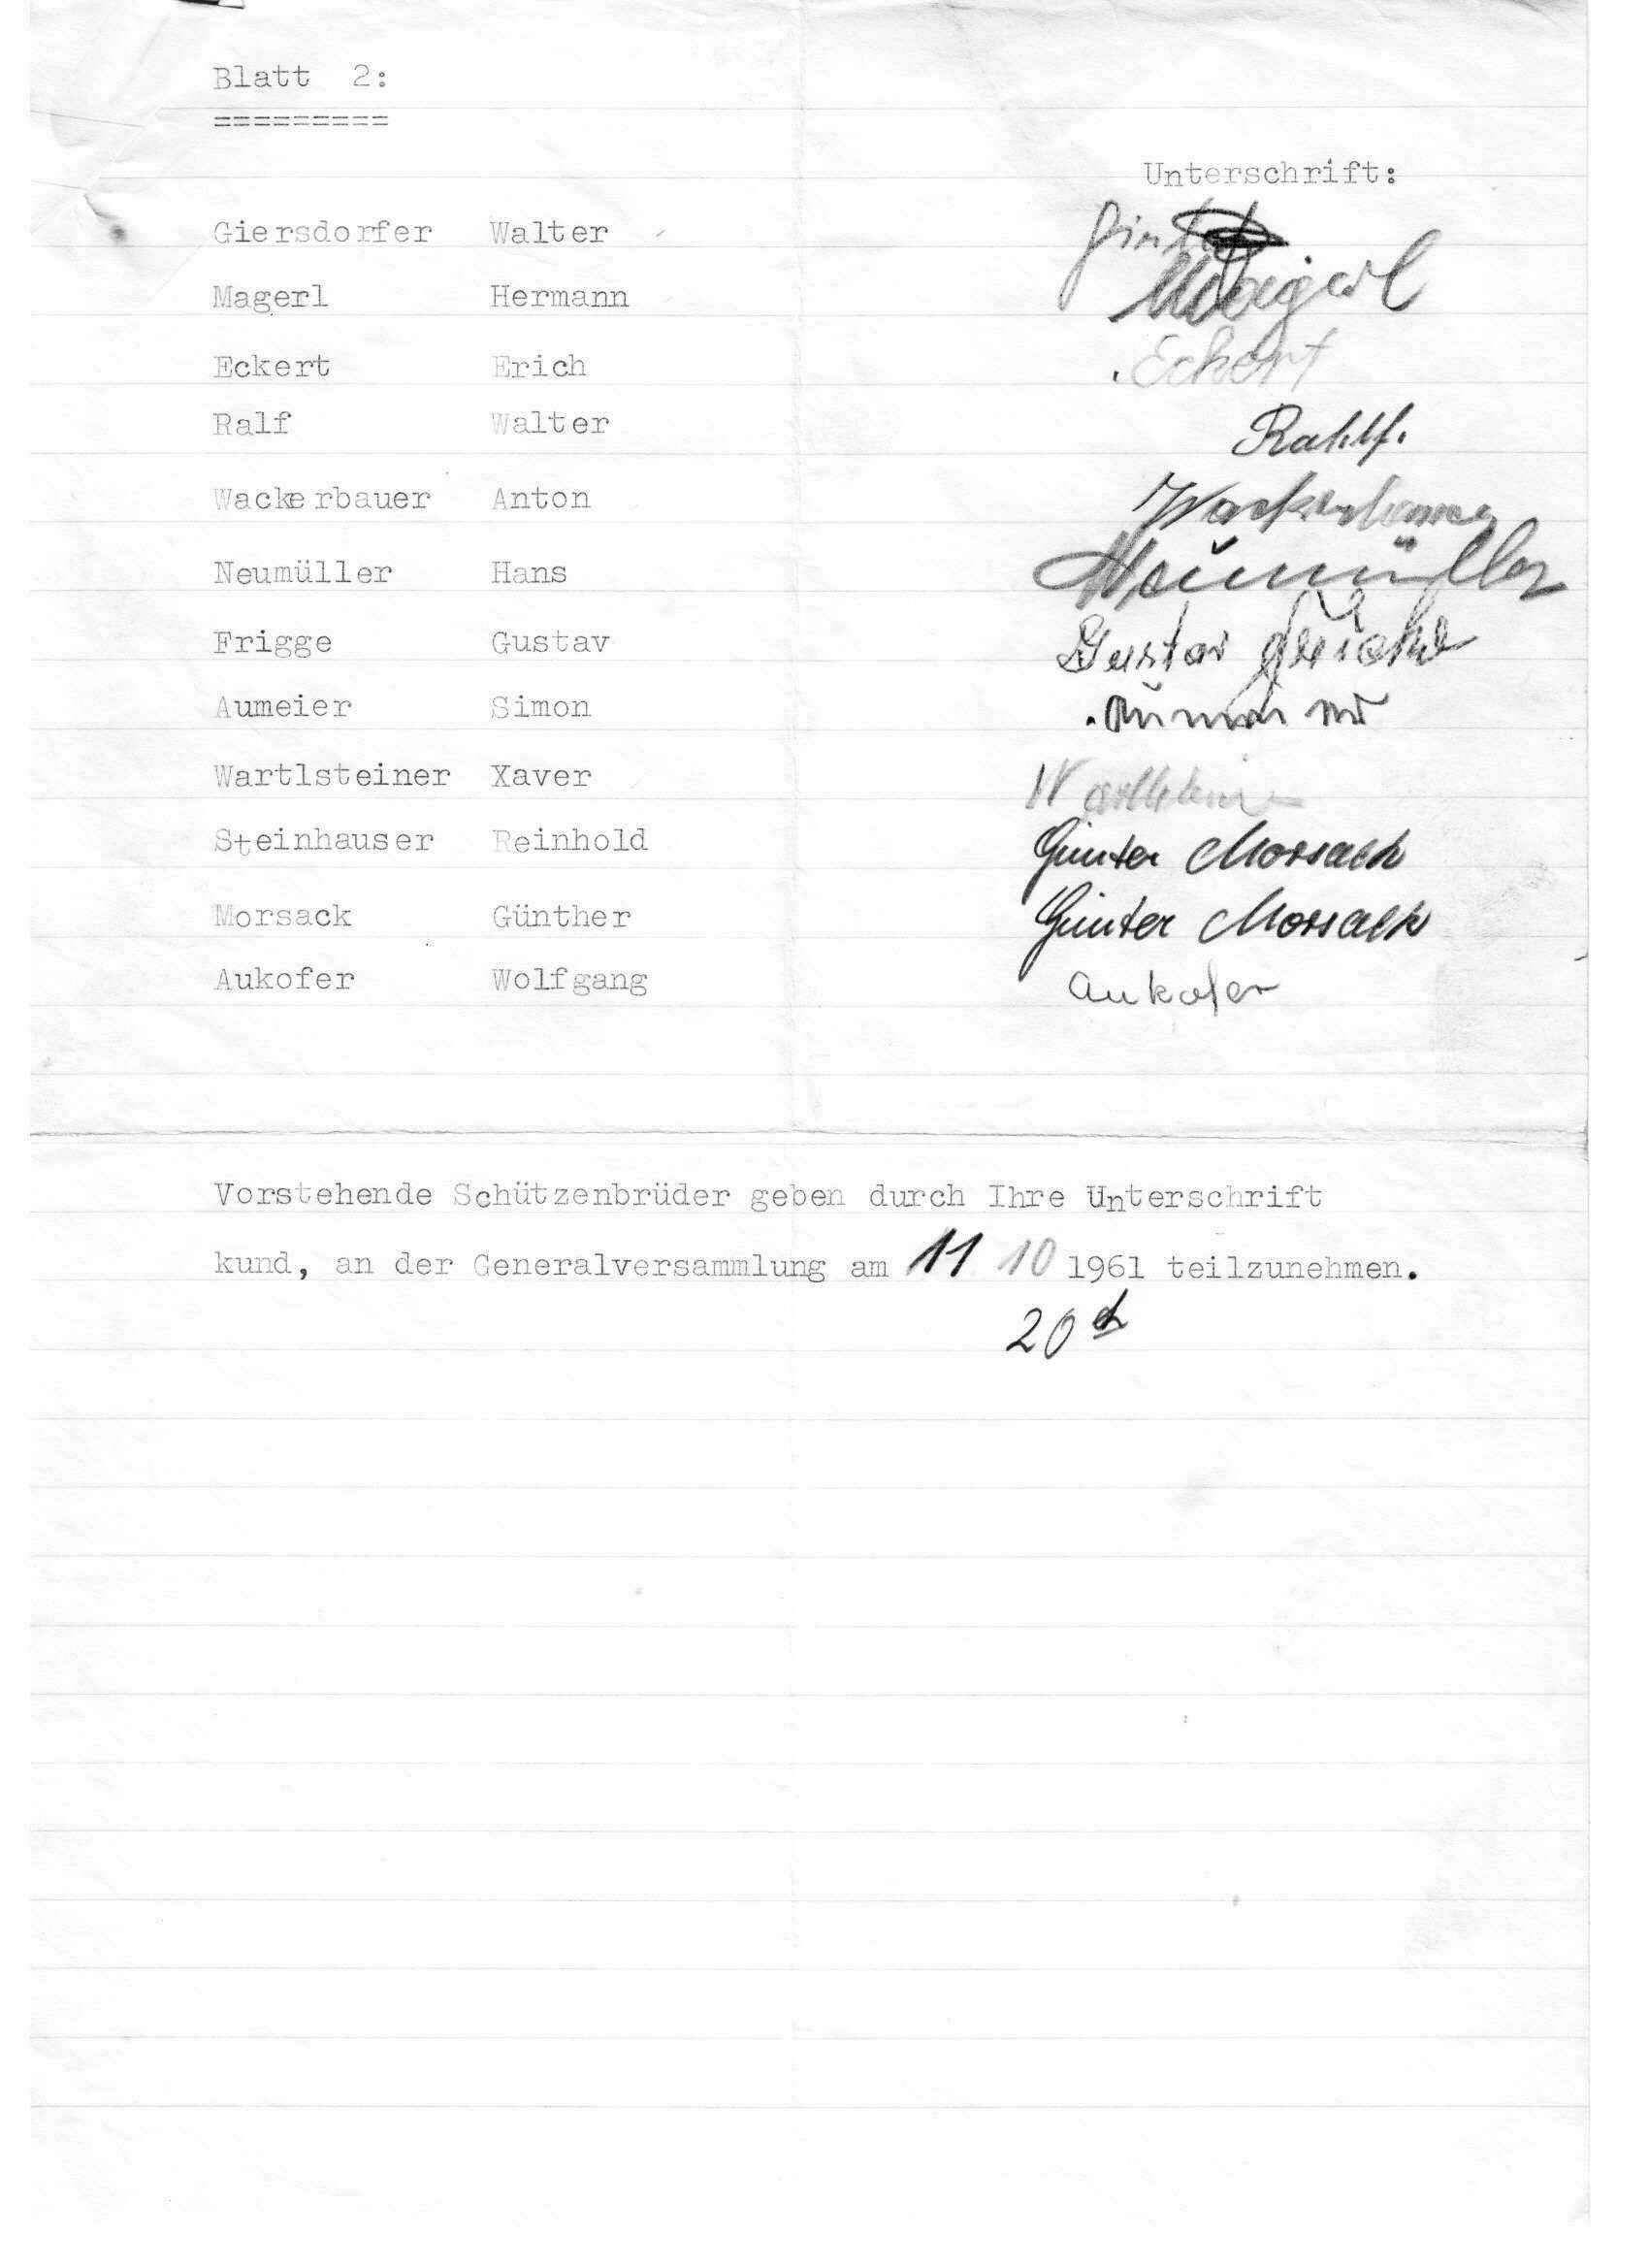 1961 Mitgliederliste 2